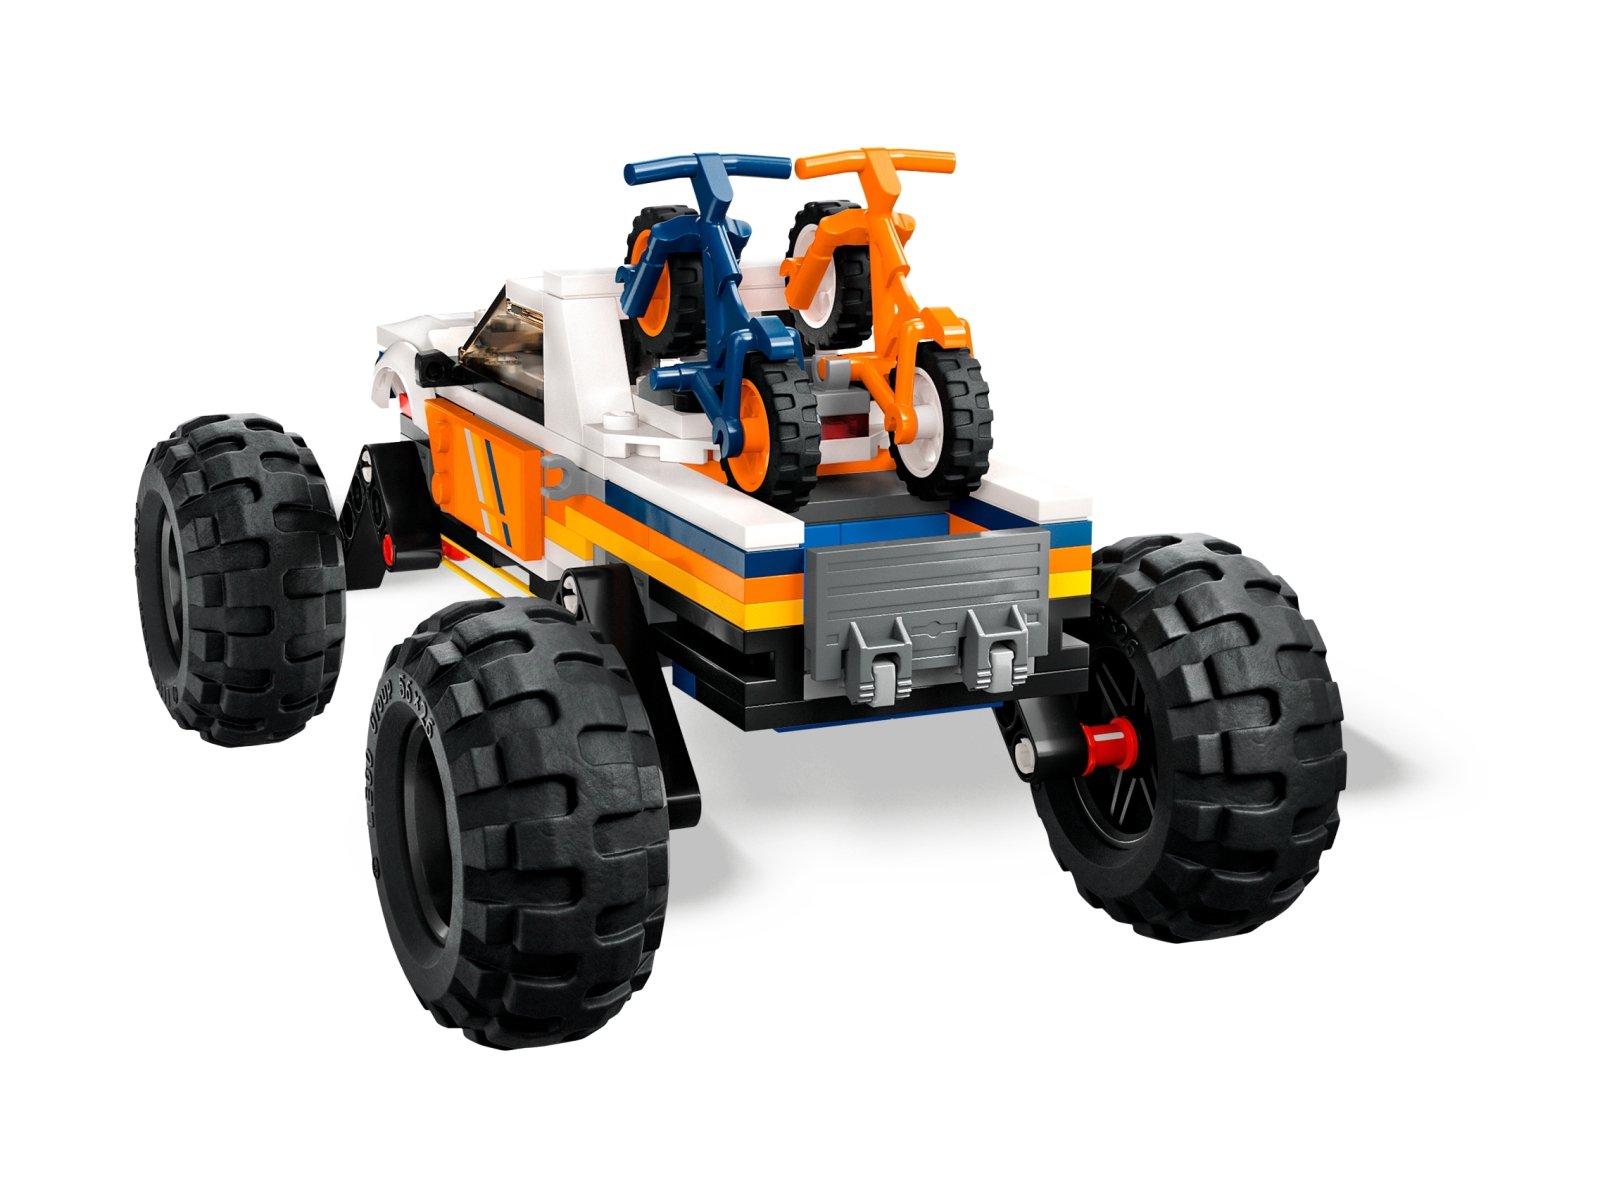 LEGO 60387 City Przygody samochodem terenowym z napędem 4x4